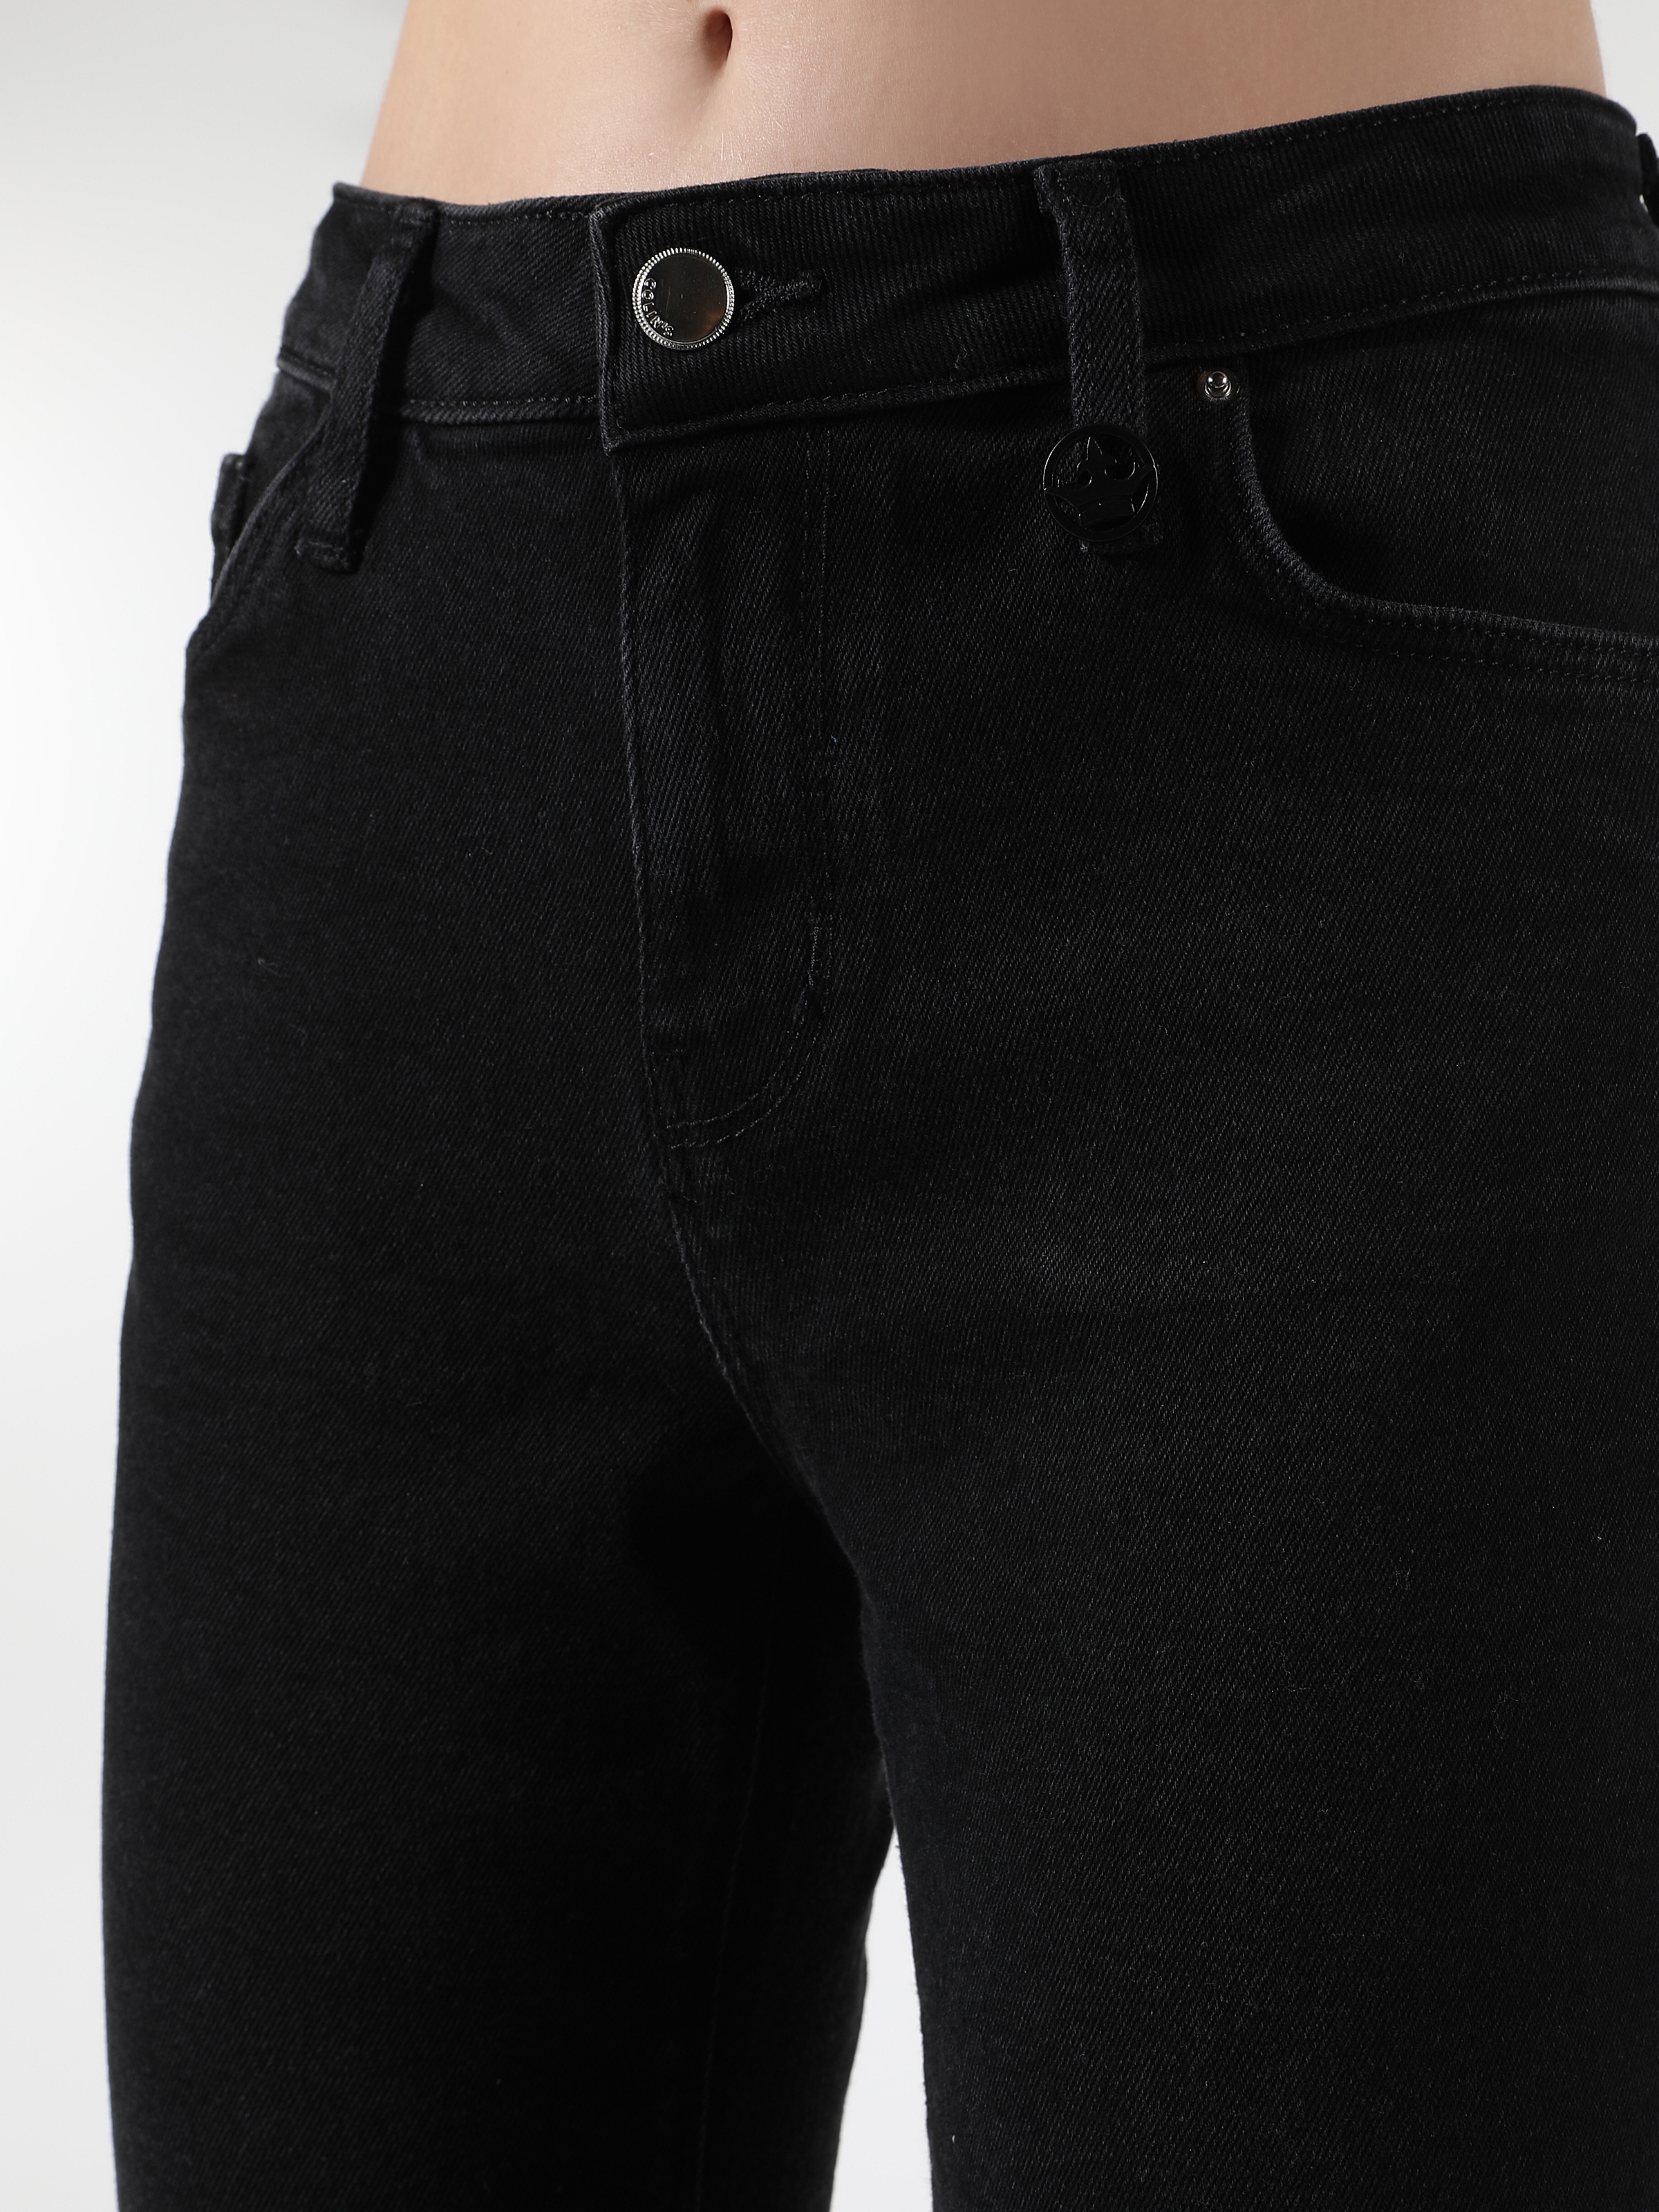 Afișați detalii pentru Pantaloni De Dama Negru Slim Fit 703 CARLA CL1061414